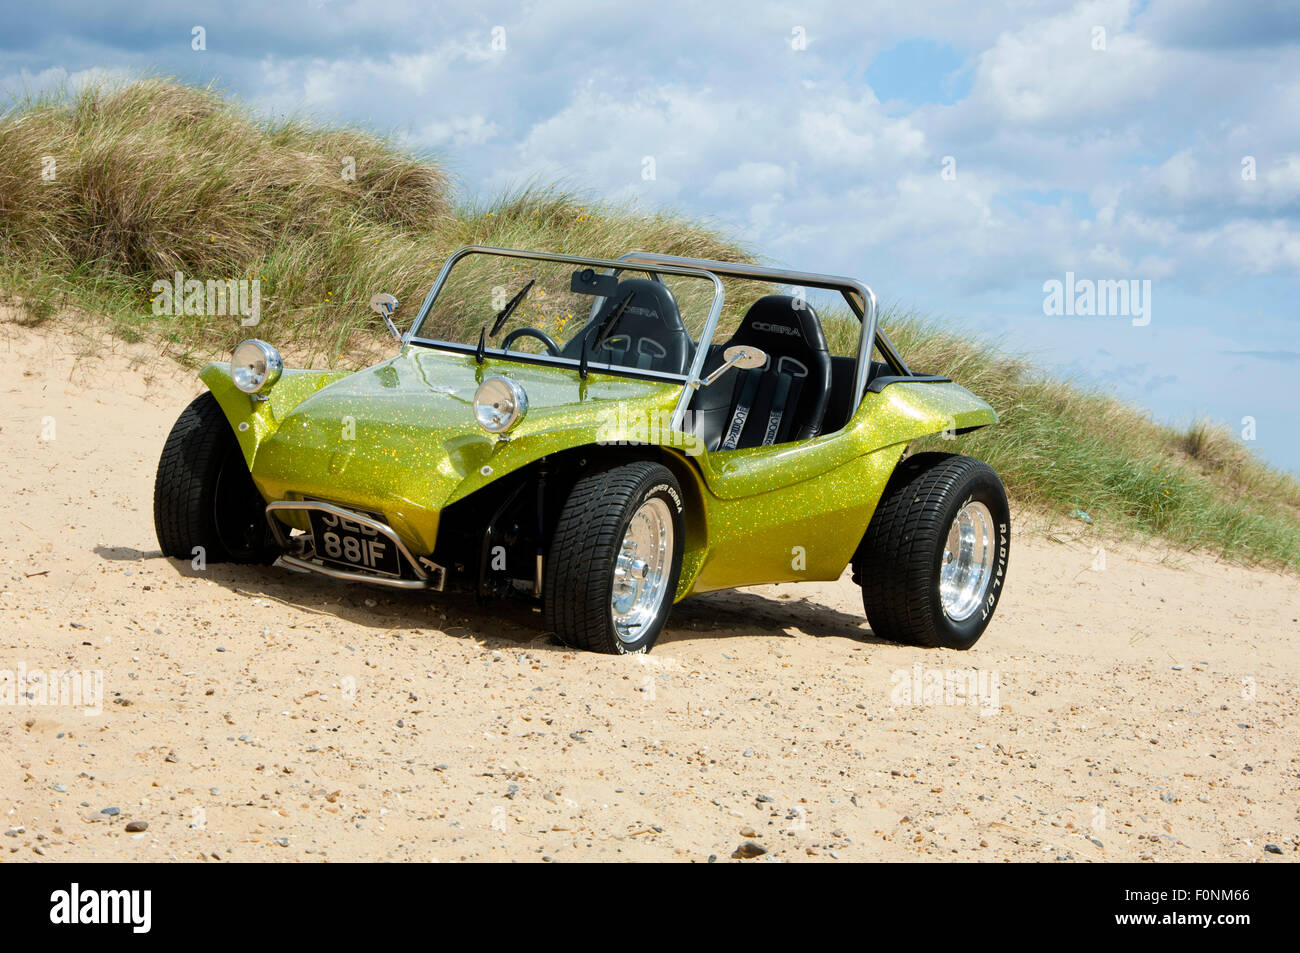 Beach buggy on a sandy beach. VW Beetle based dune buggy car Stock Photo -  Alamy